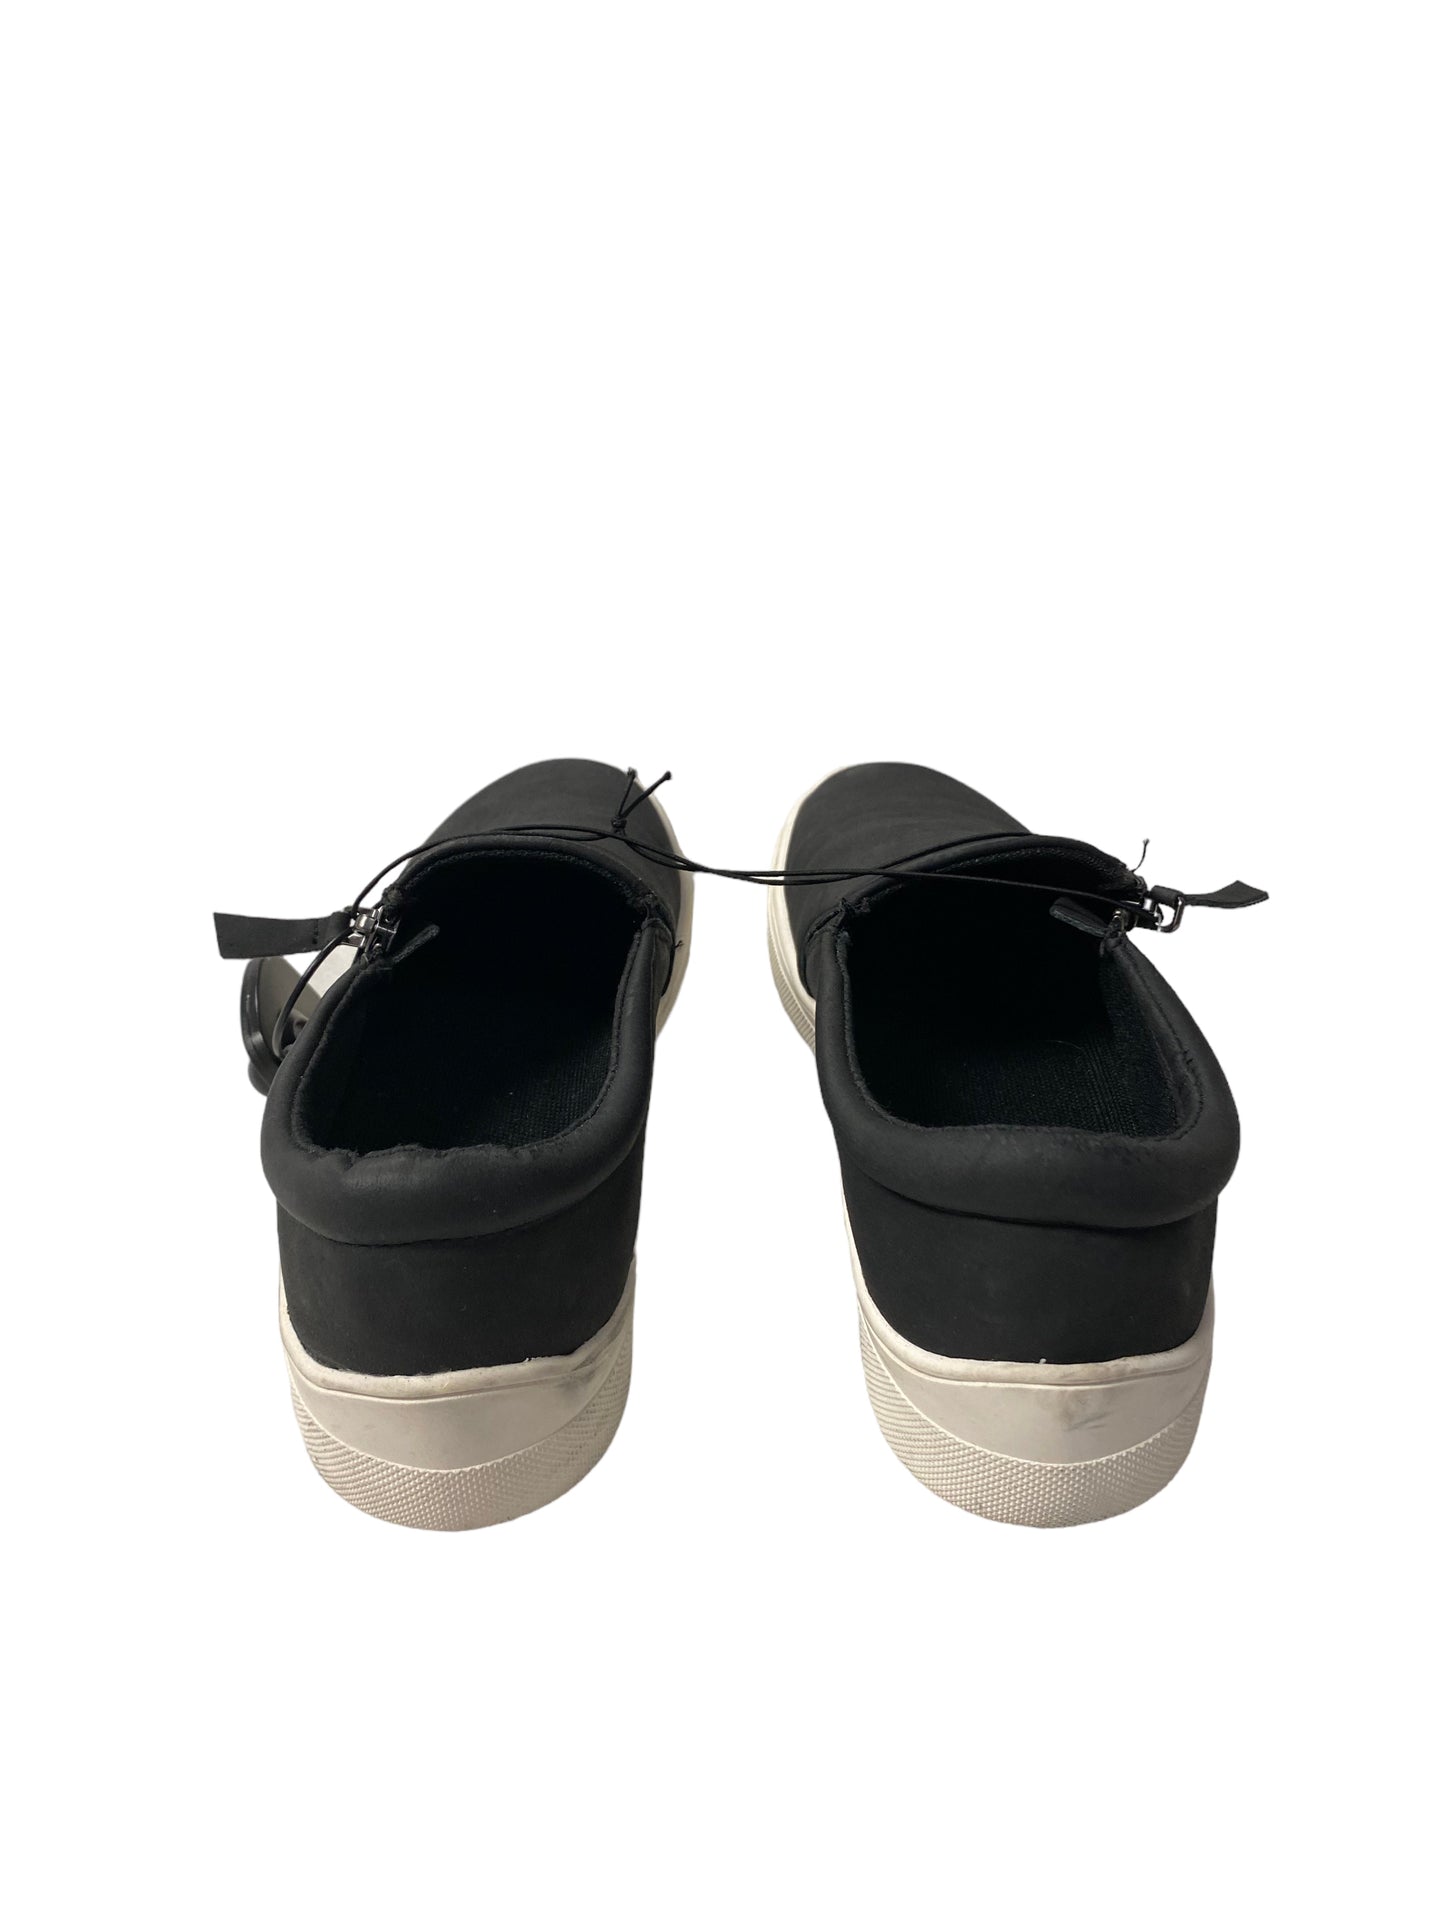 Black Shoes Sneakers Kensie, Size 6.5